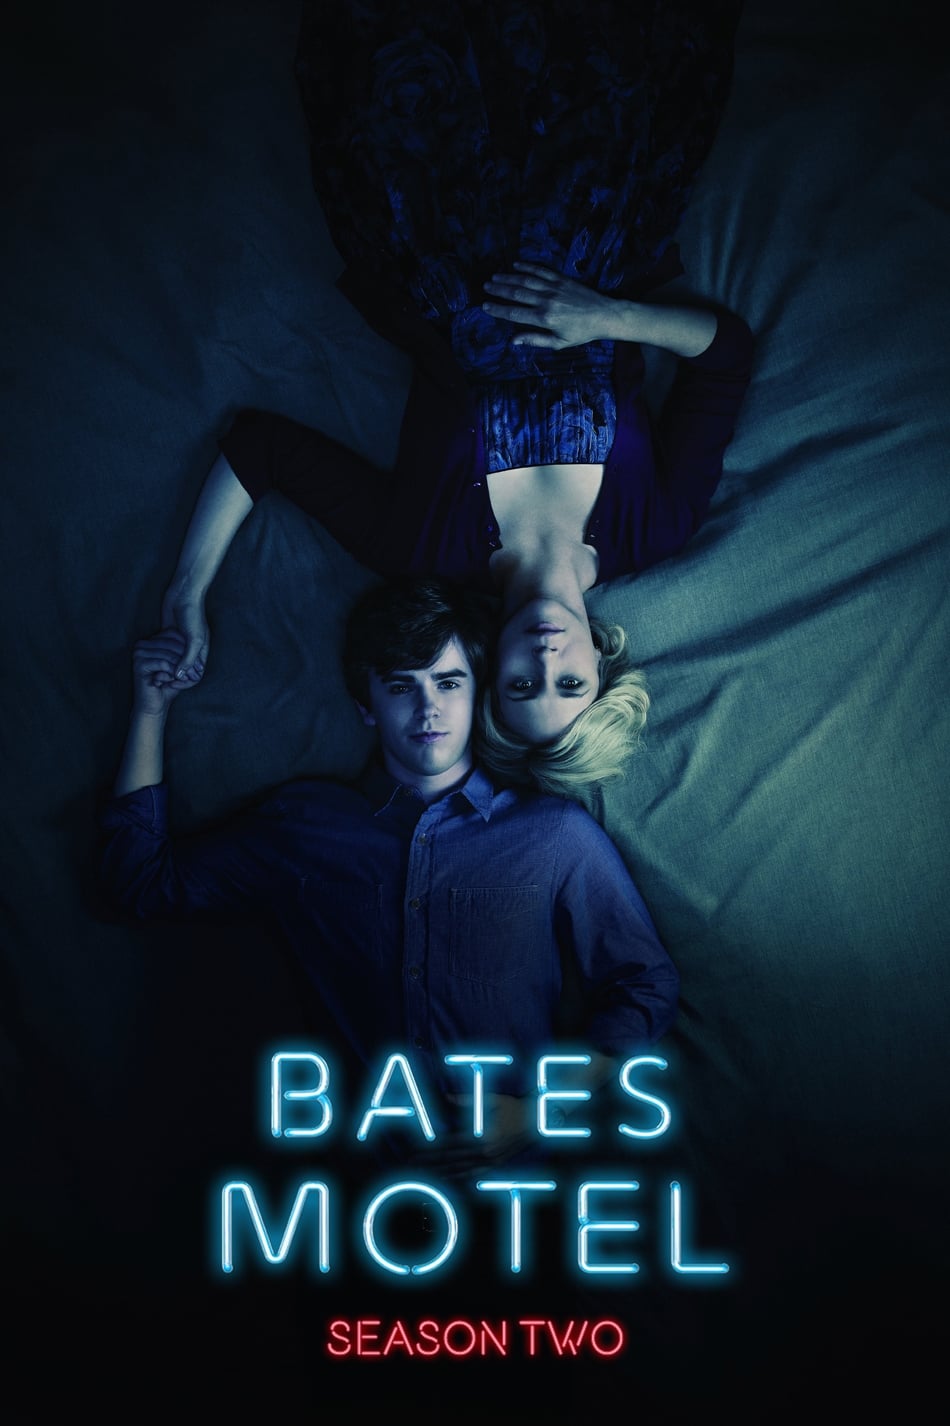 ดูหนังออนไลน์ Bates Motel (2014) Season 2 ซับไทย EP 6 เบส โมเทล ปี2 ตอนที่6 (ซับไทย)